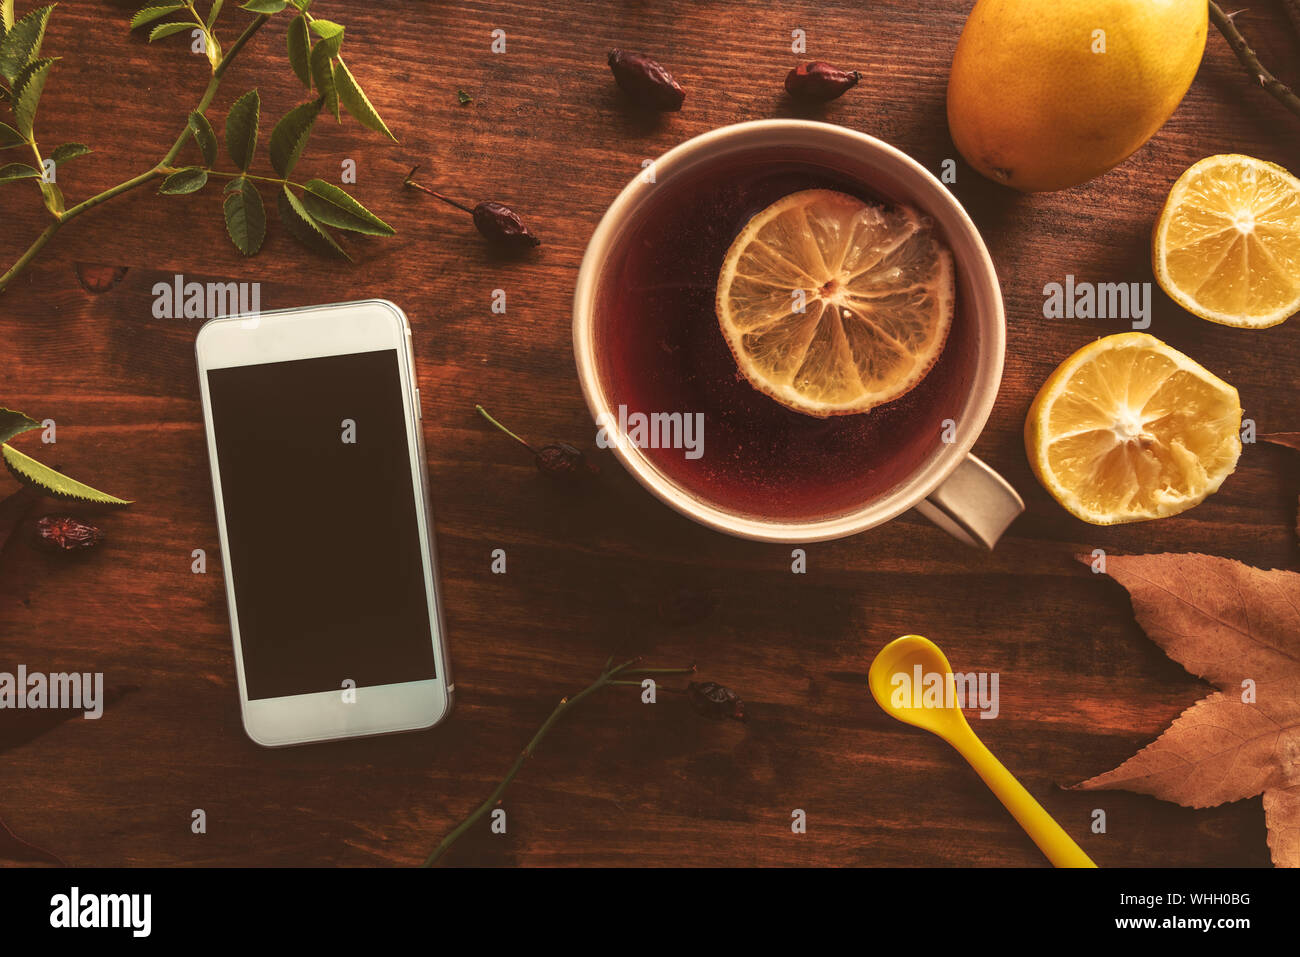 Rosa Mosqueta tè in radica con schermo vuoto smartphone e limone, vista dall'alto del bicchiere sul tavolo Foto Stock